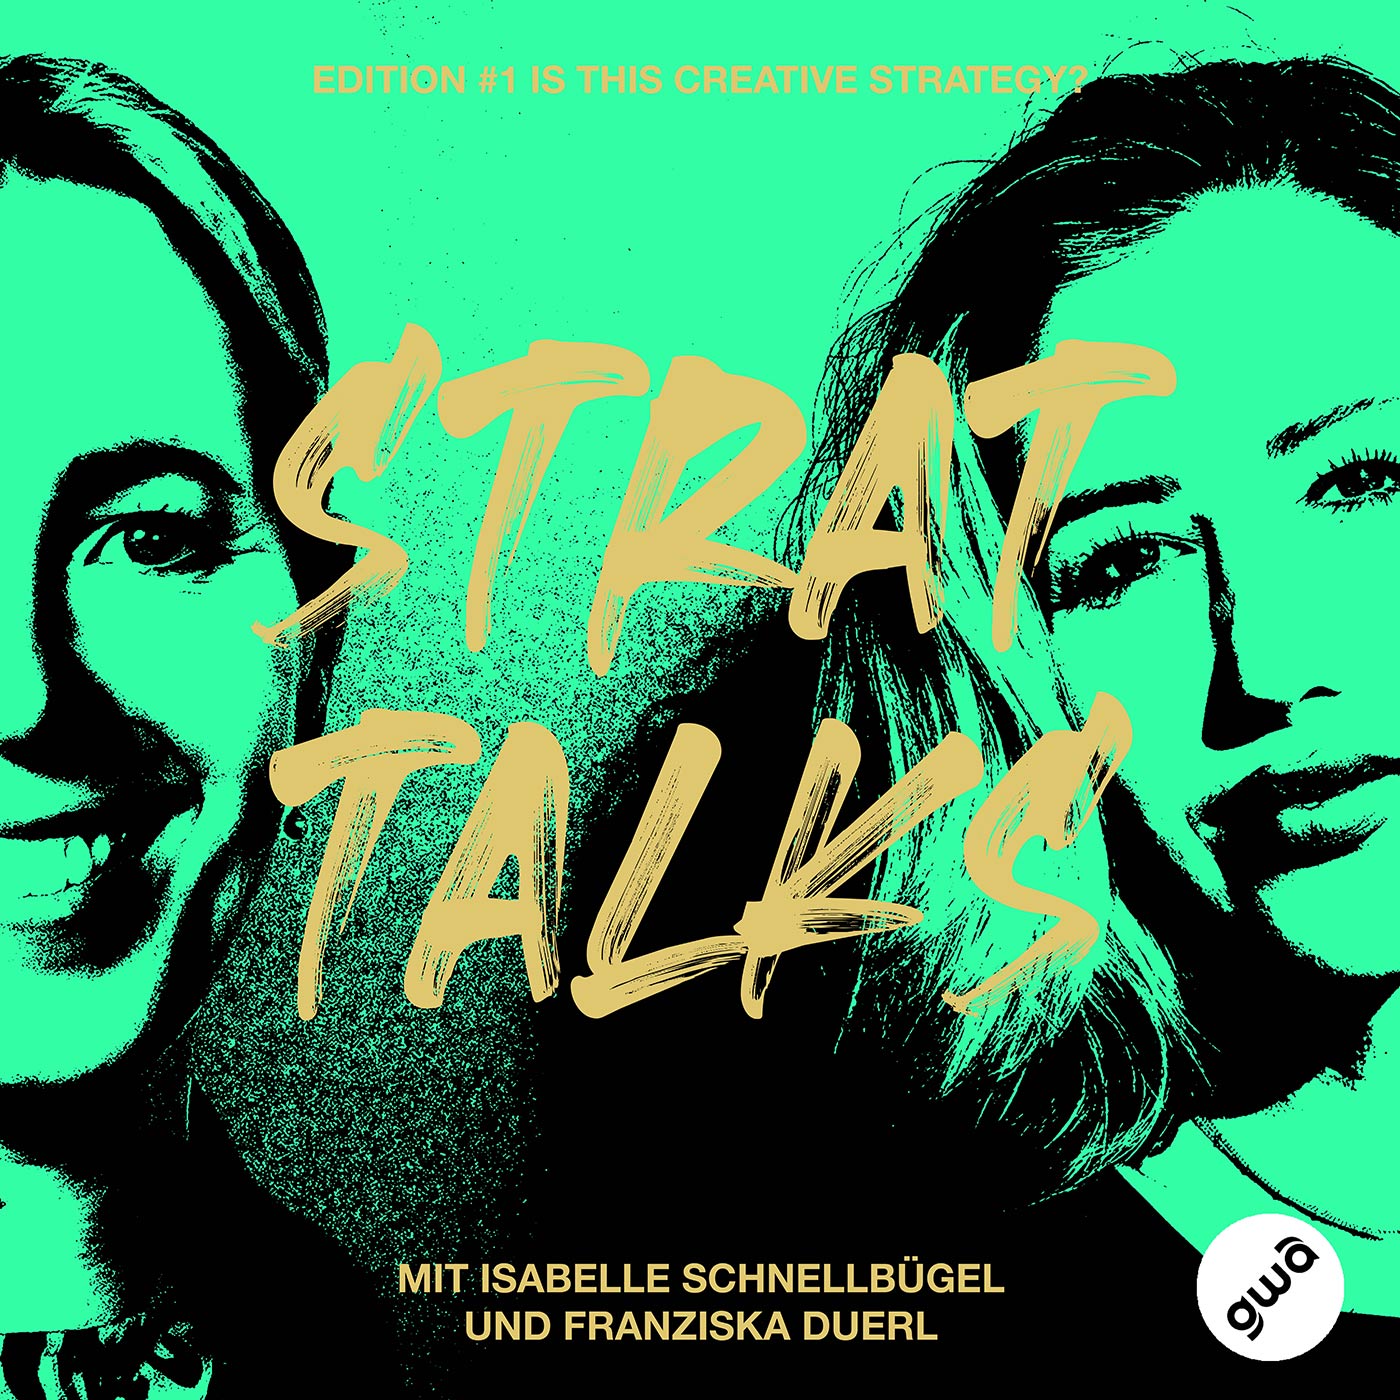 Episode1: Franziska Duerl & Isabelle Schnellbügel - Creative Strategy ist schon ein geiles Berufsfeld!